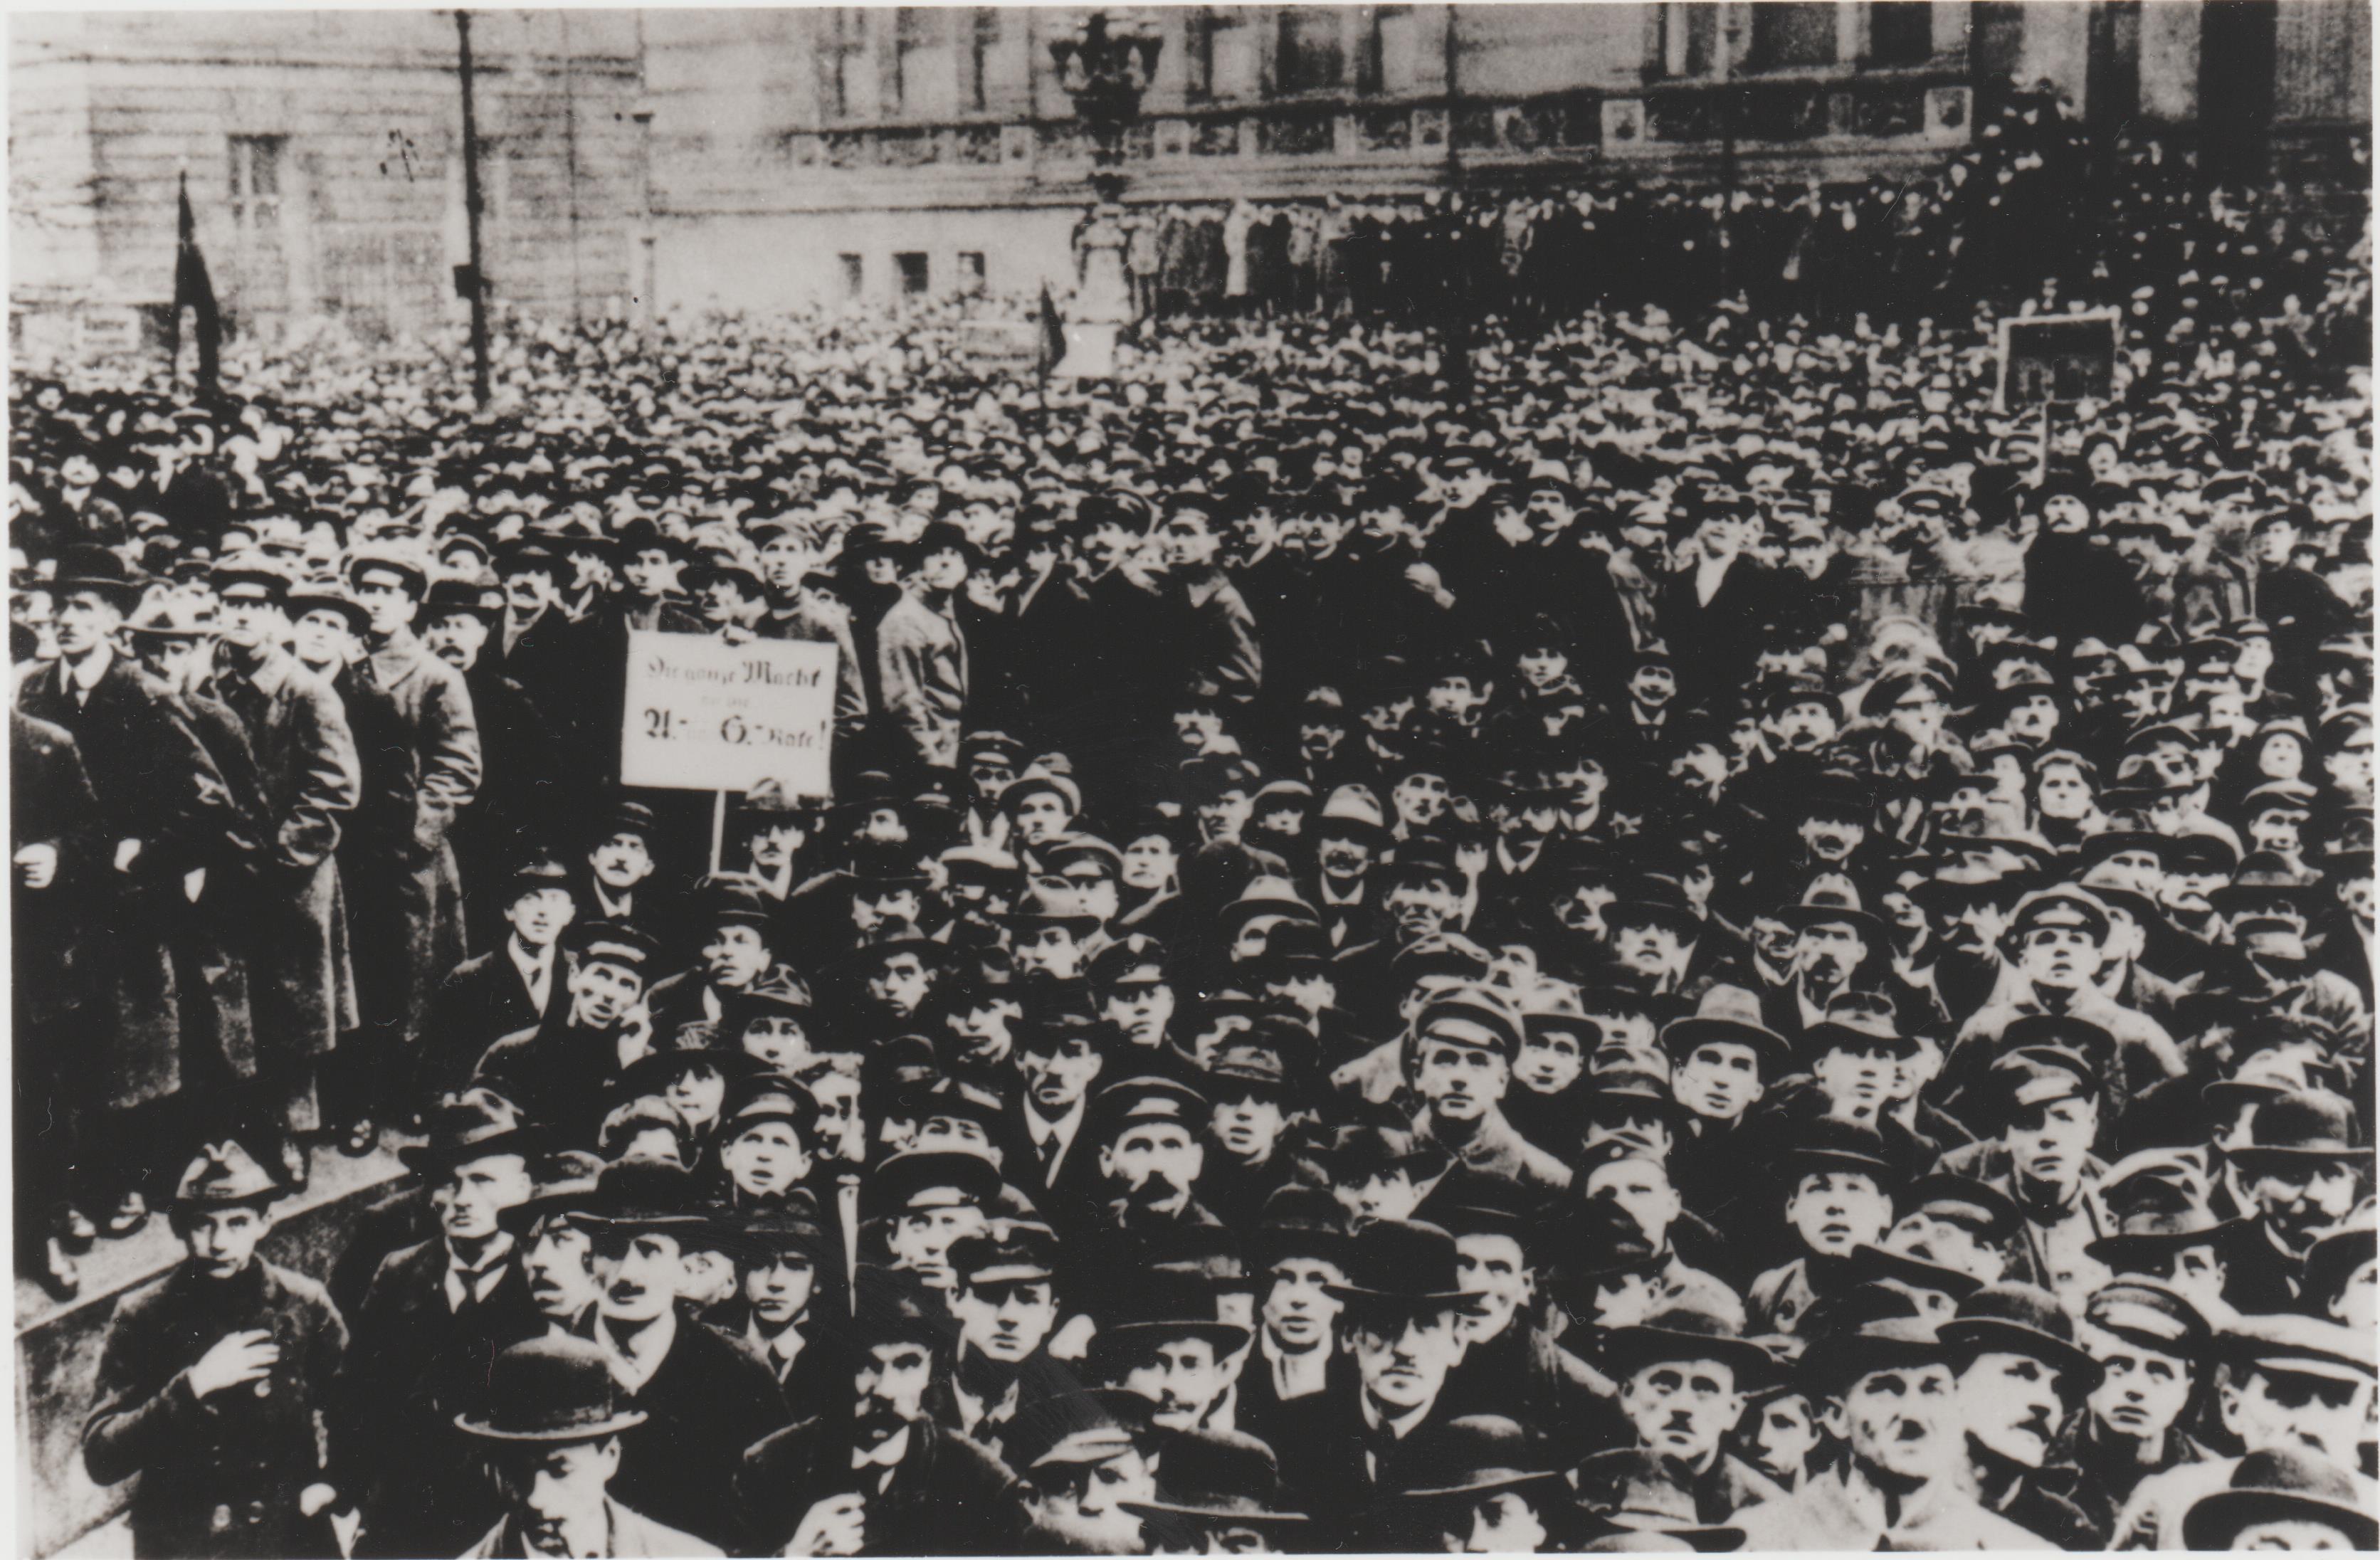 Postkarte des Deutschen Metallarbeiter-Verbandes, Novemberrevolution 1919 (Zentralarchiv IG Metall. CC BY-NC-SA)